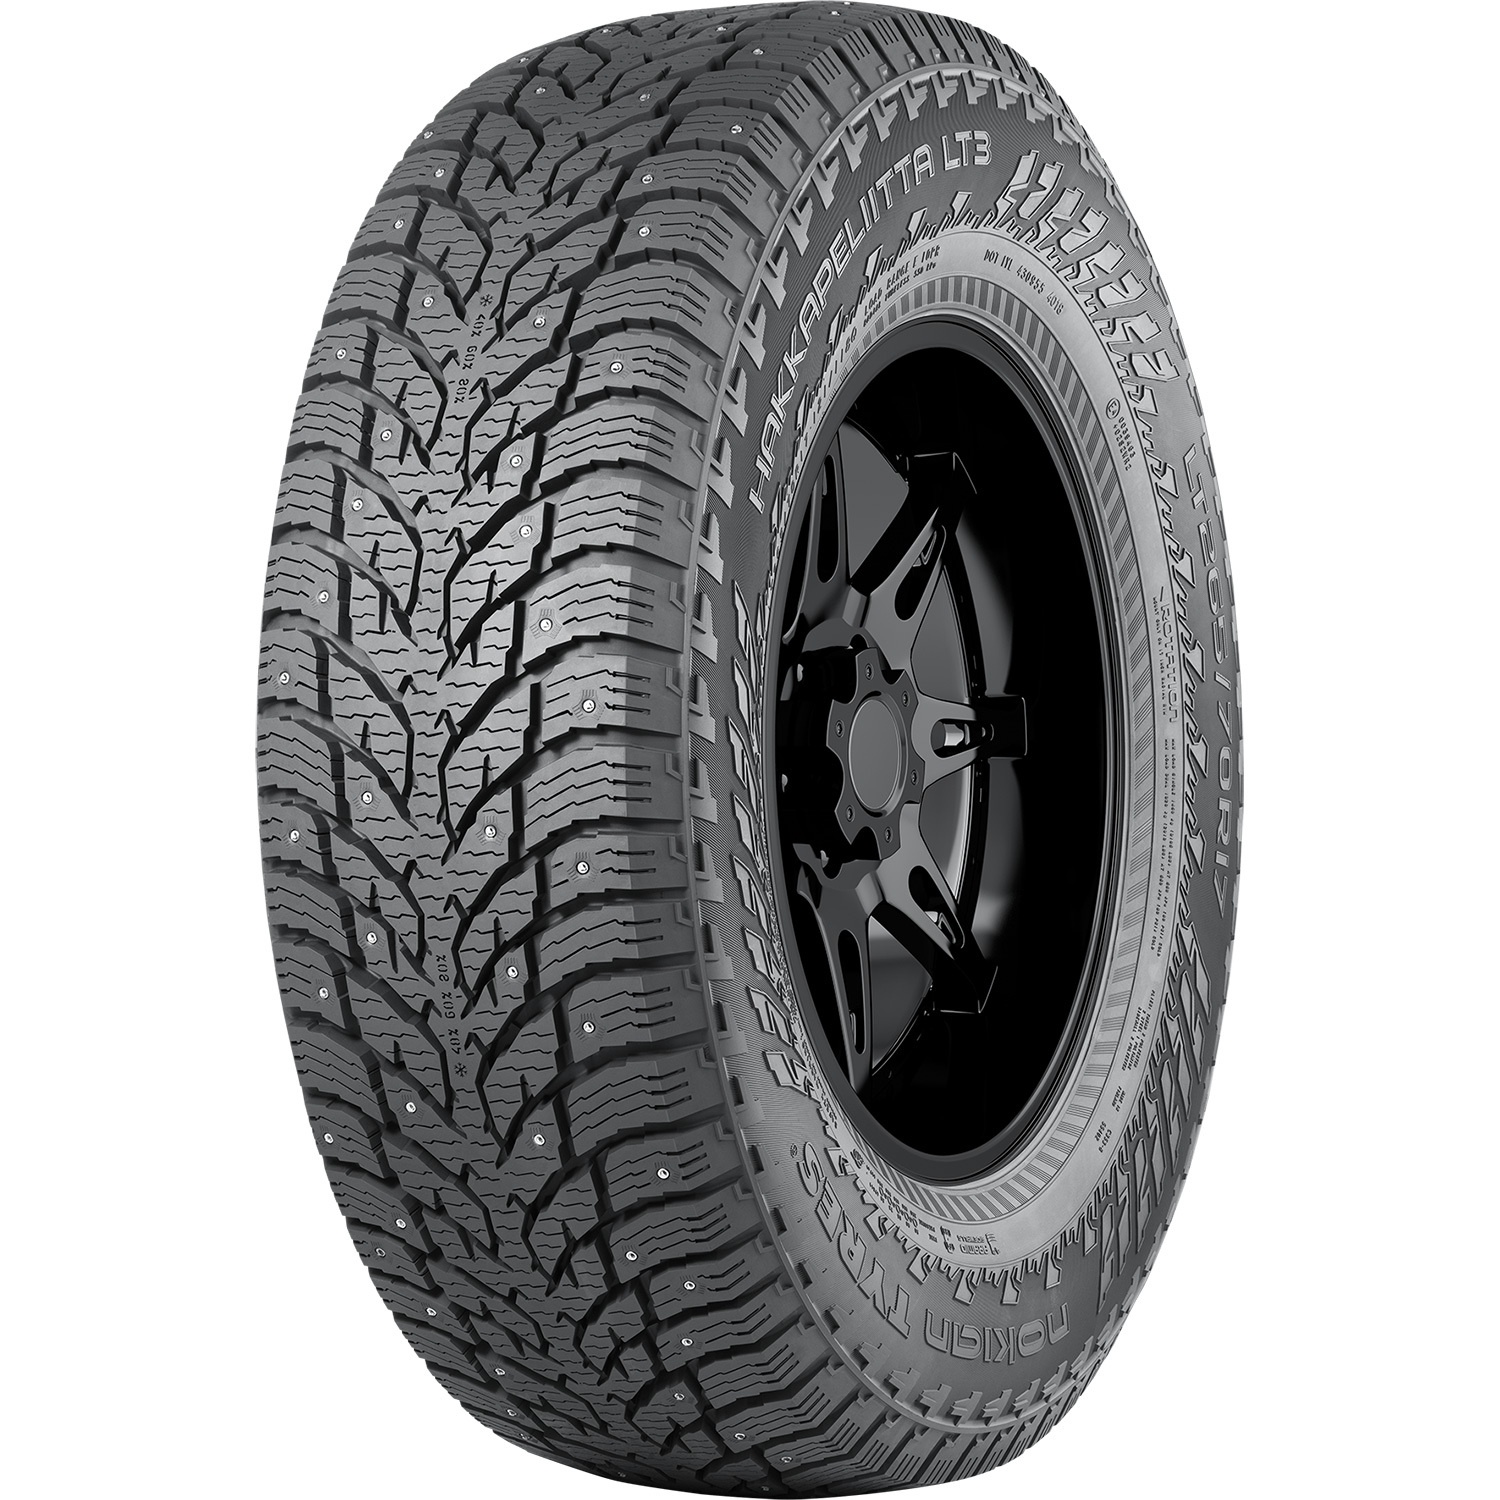 Автомобильная шина Nokian Tyres Hakkapeliitta LT3 245/75 R16 120Q Шипованные nokian tyres outpost at 245 75 r16 120s без шипов